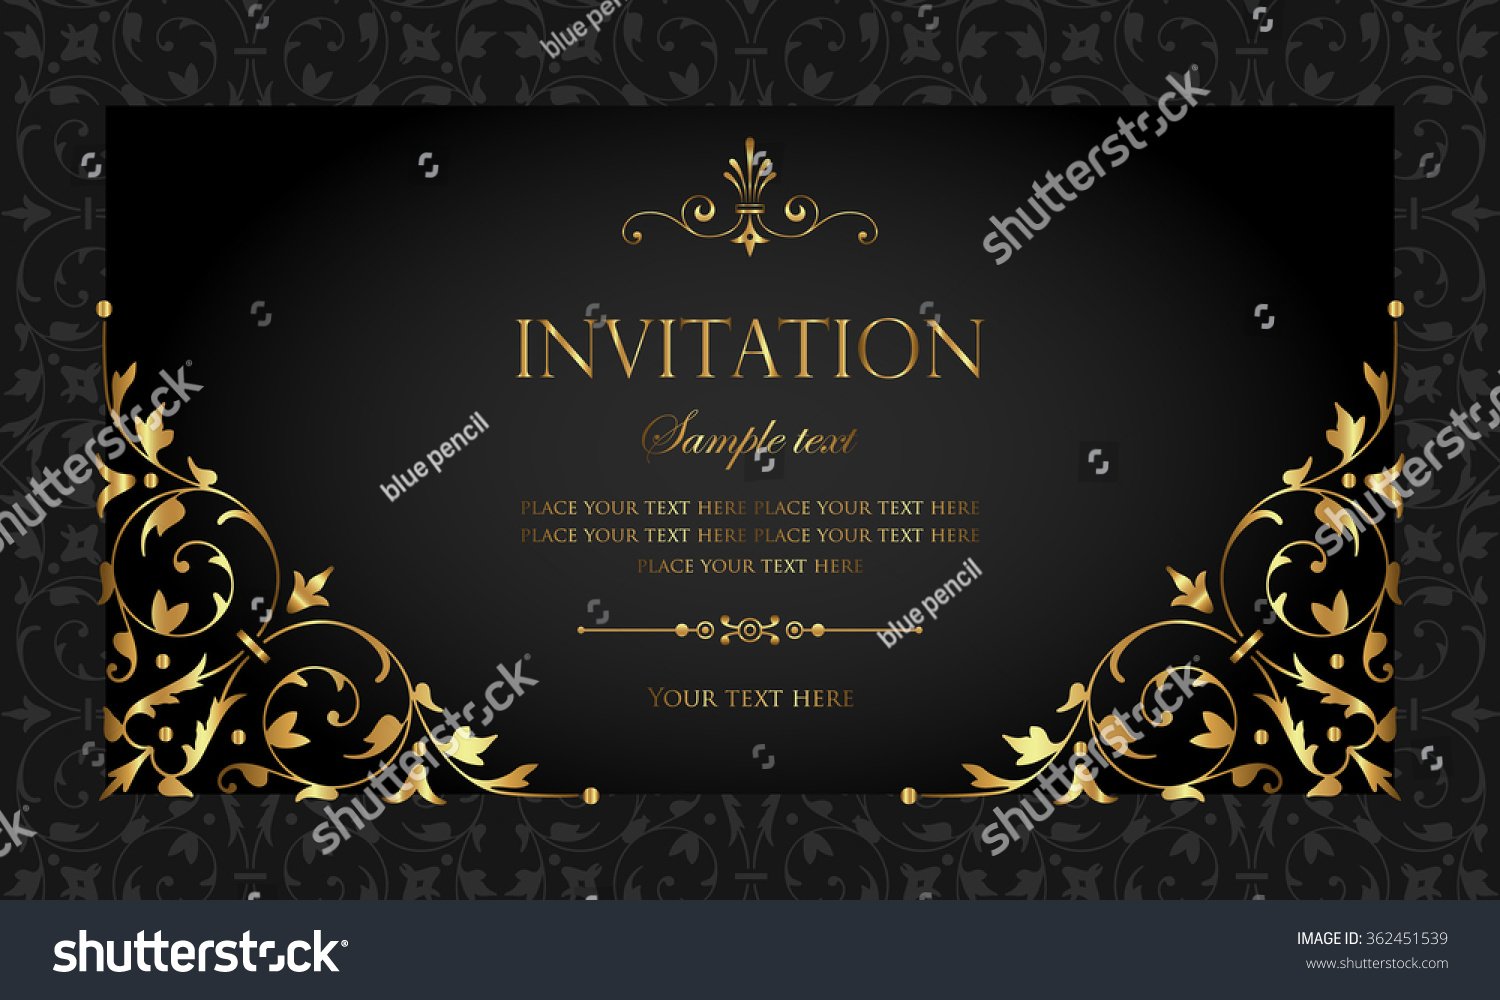 black-and-gold-invitation